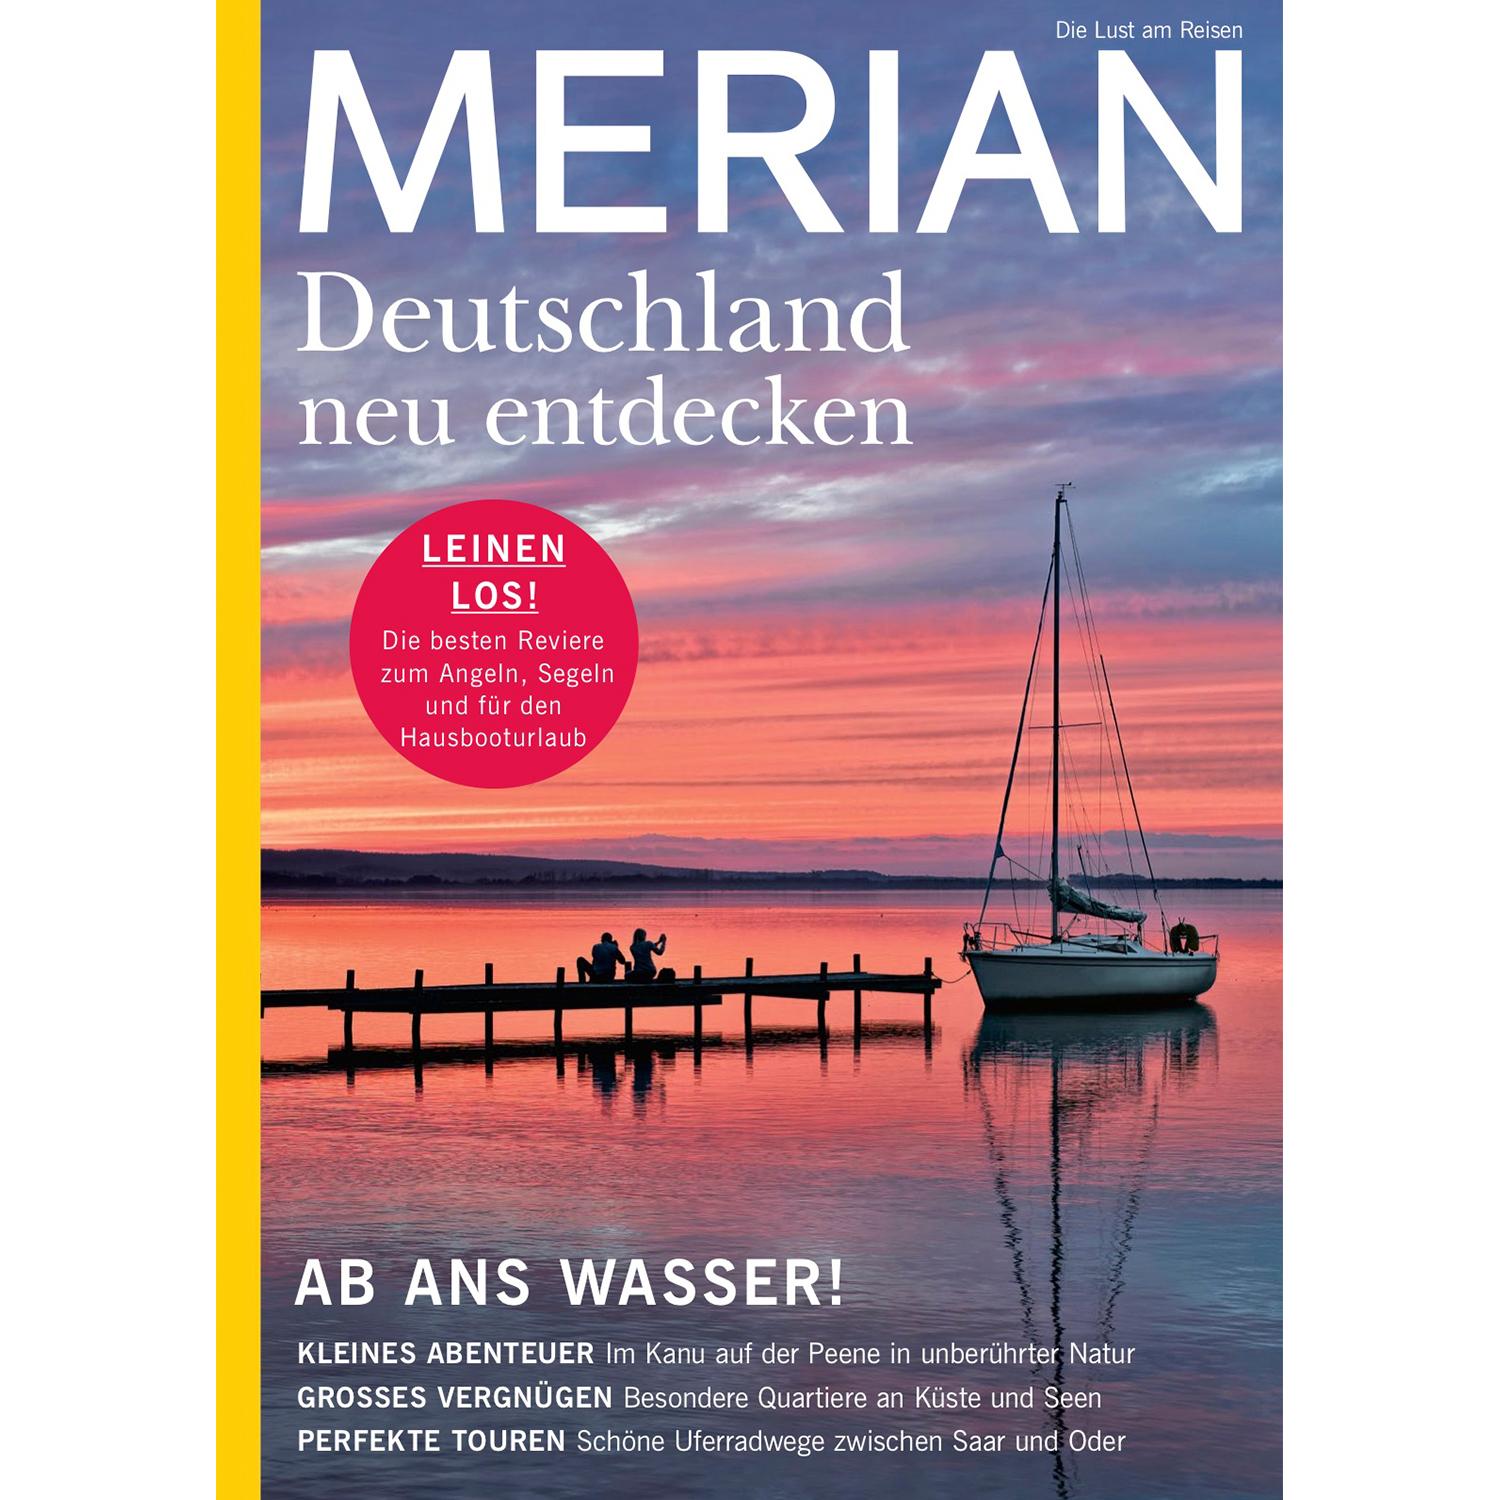 MERIAN Hefte MERIAN Magazin Deutschland neu entdecken City Trips 11/21